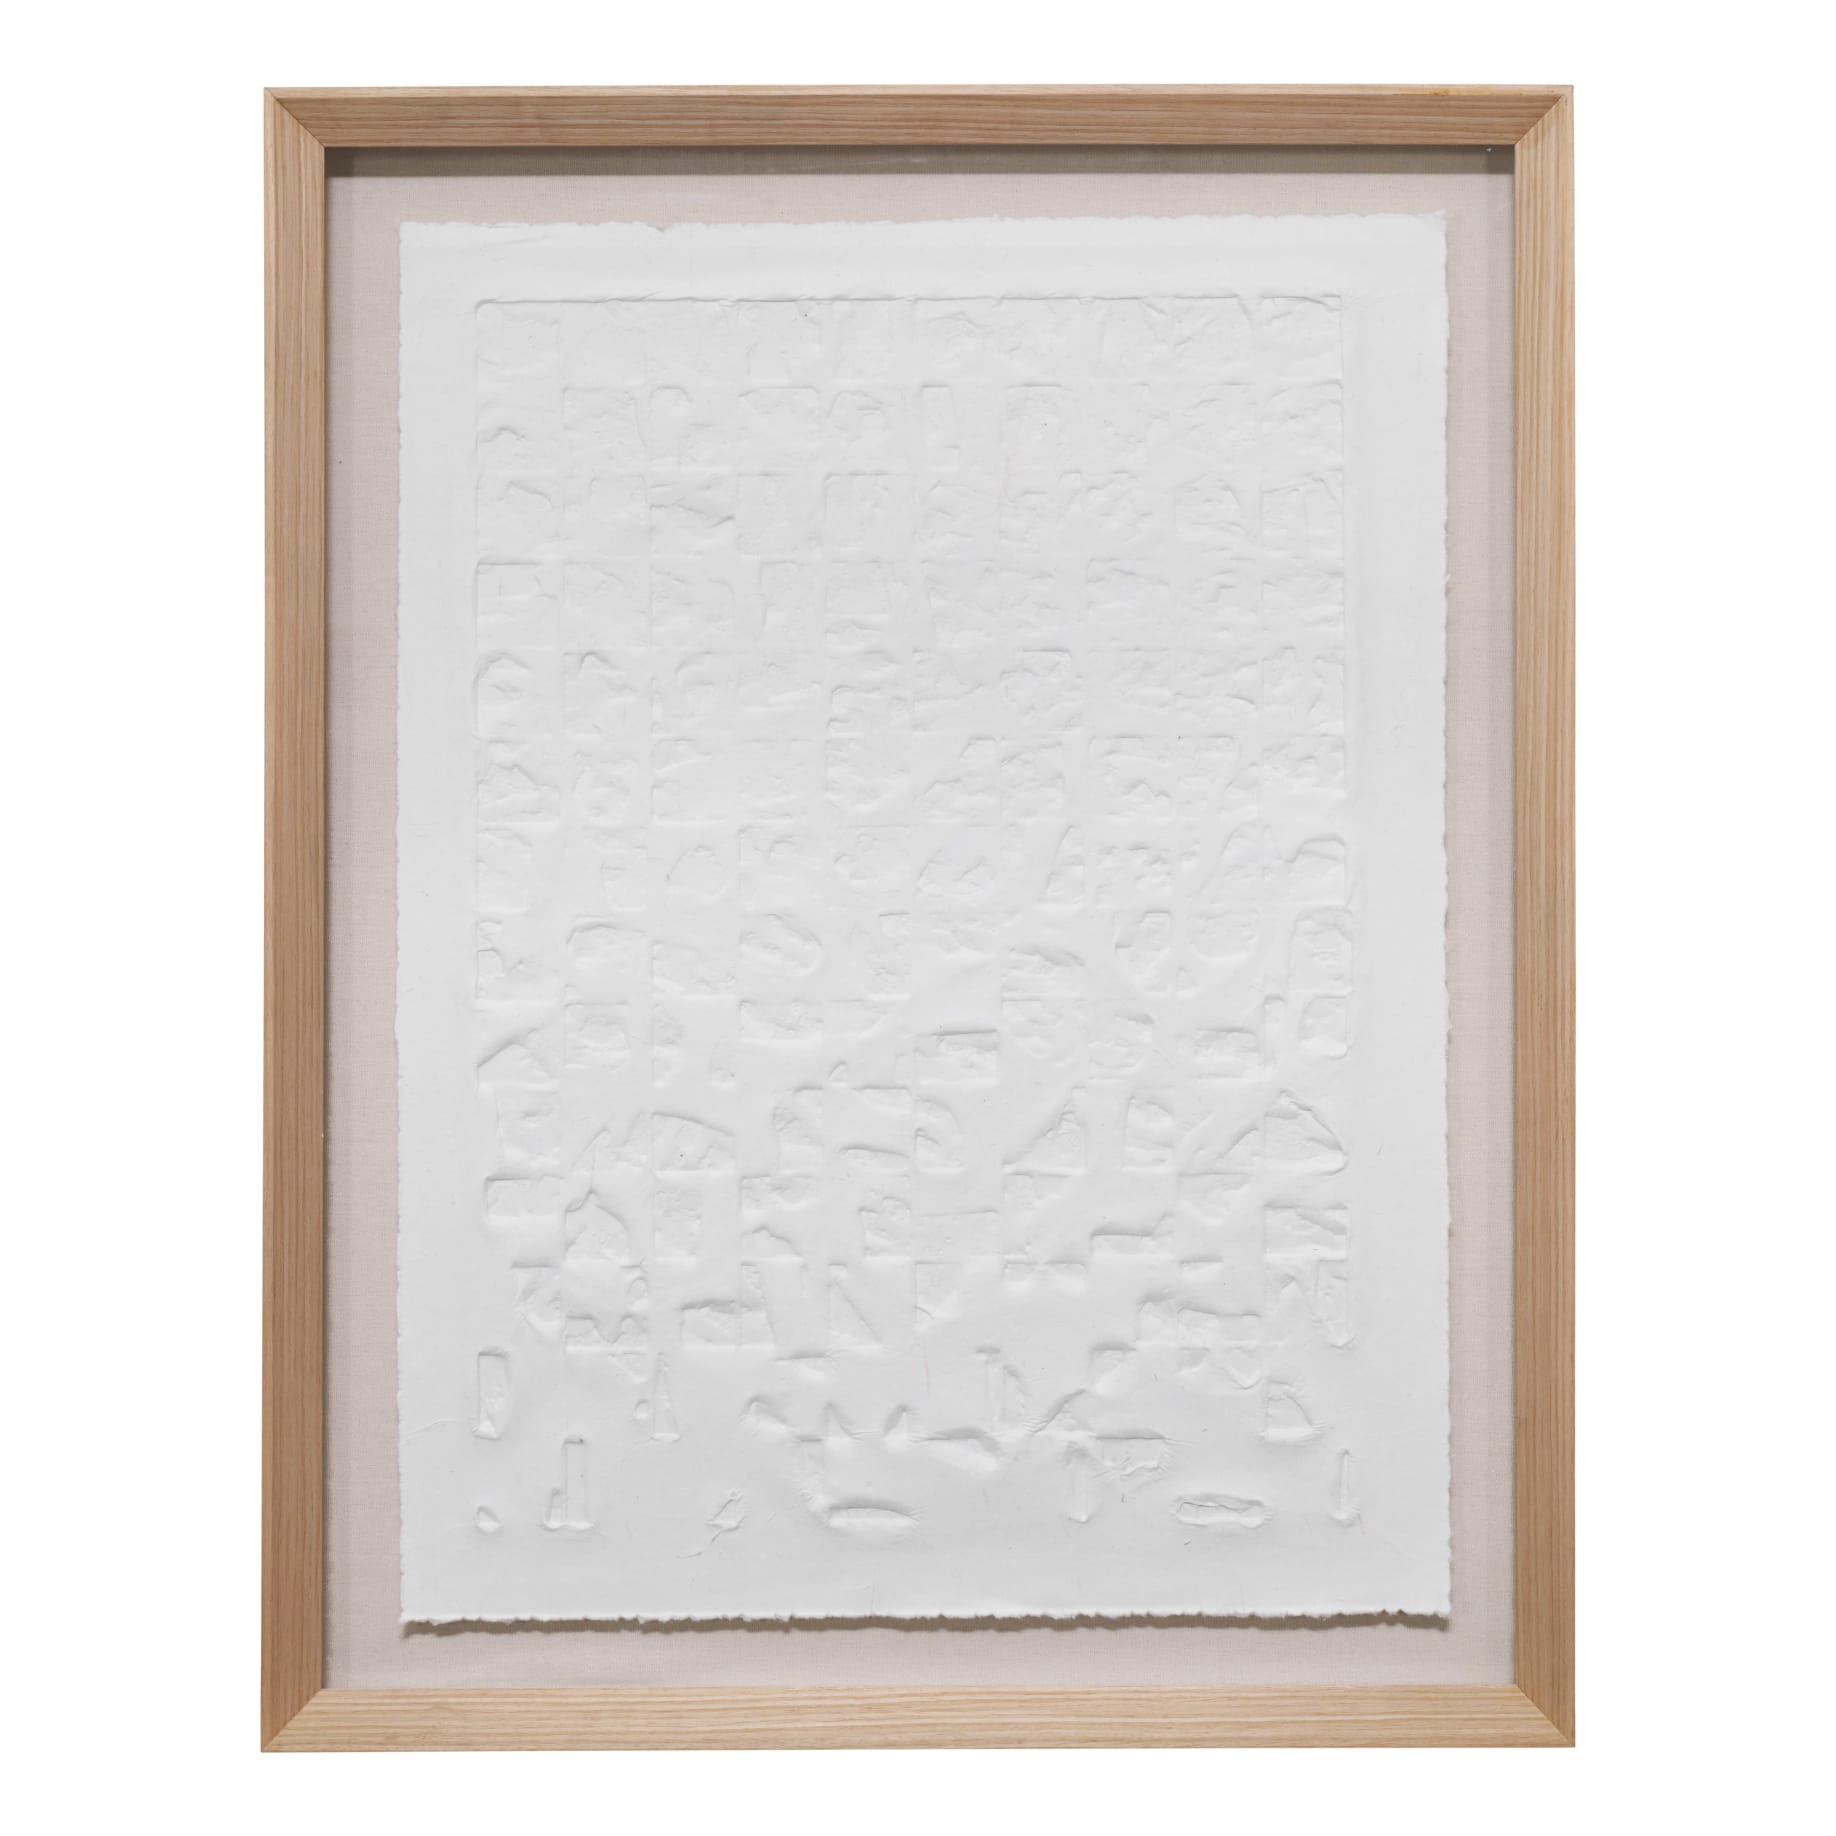 Manuscript A Framed Paper Print in 84 x 94cm